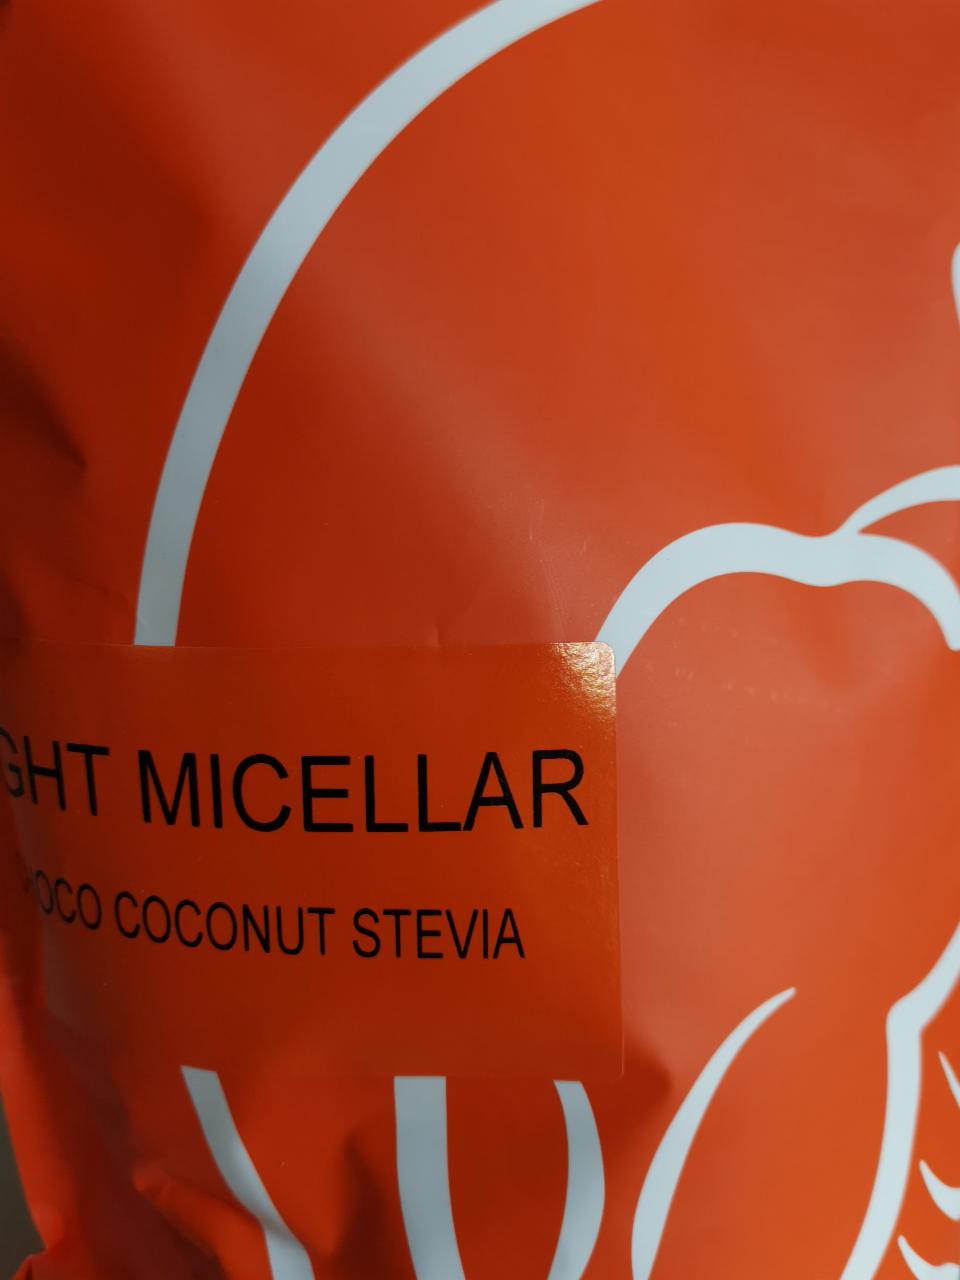 Fotografie - Night micellar choco coconut stevia Still Mass